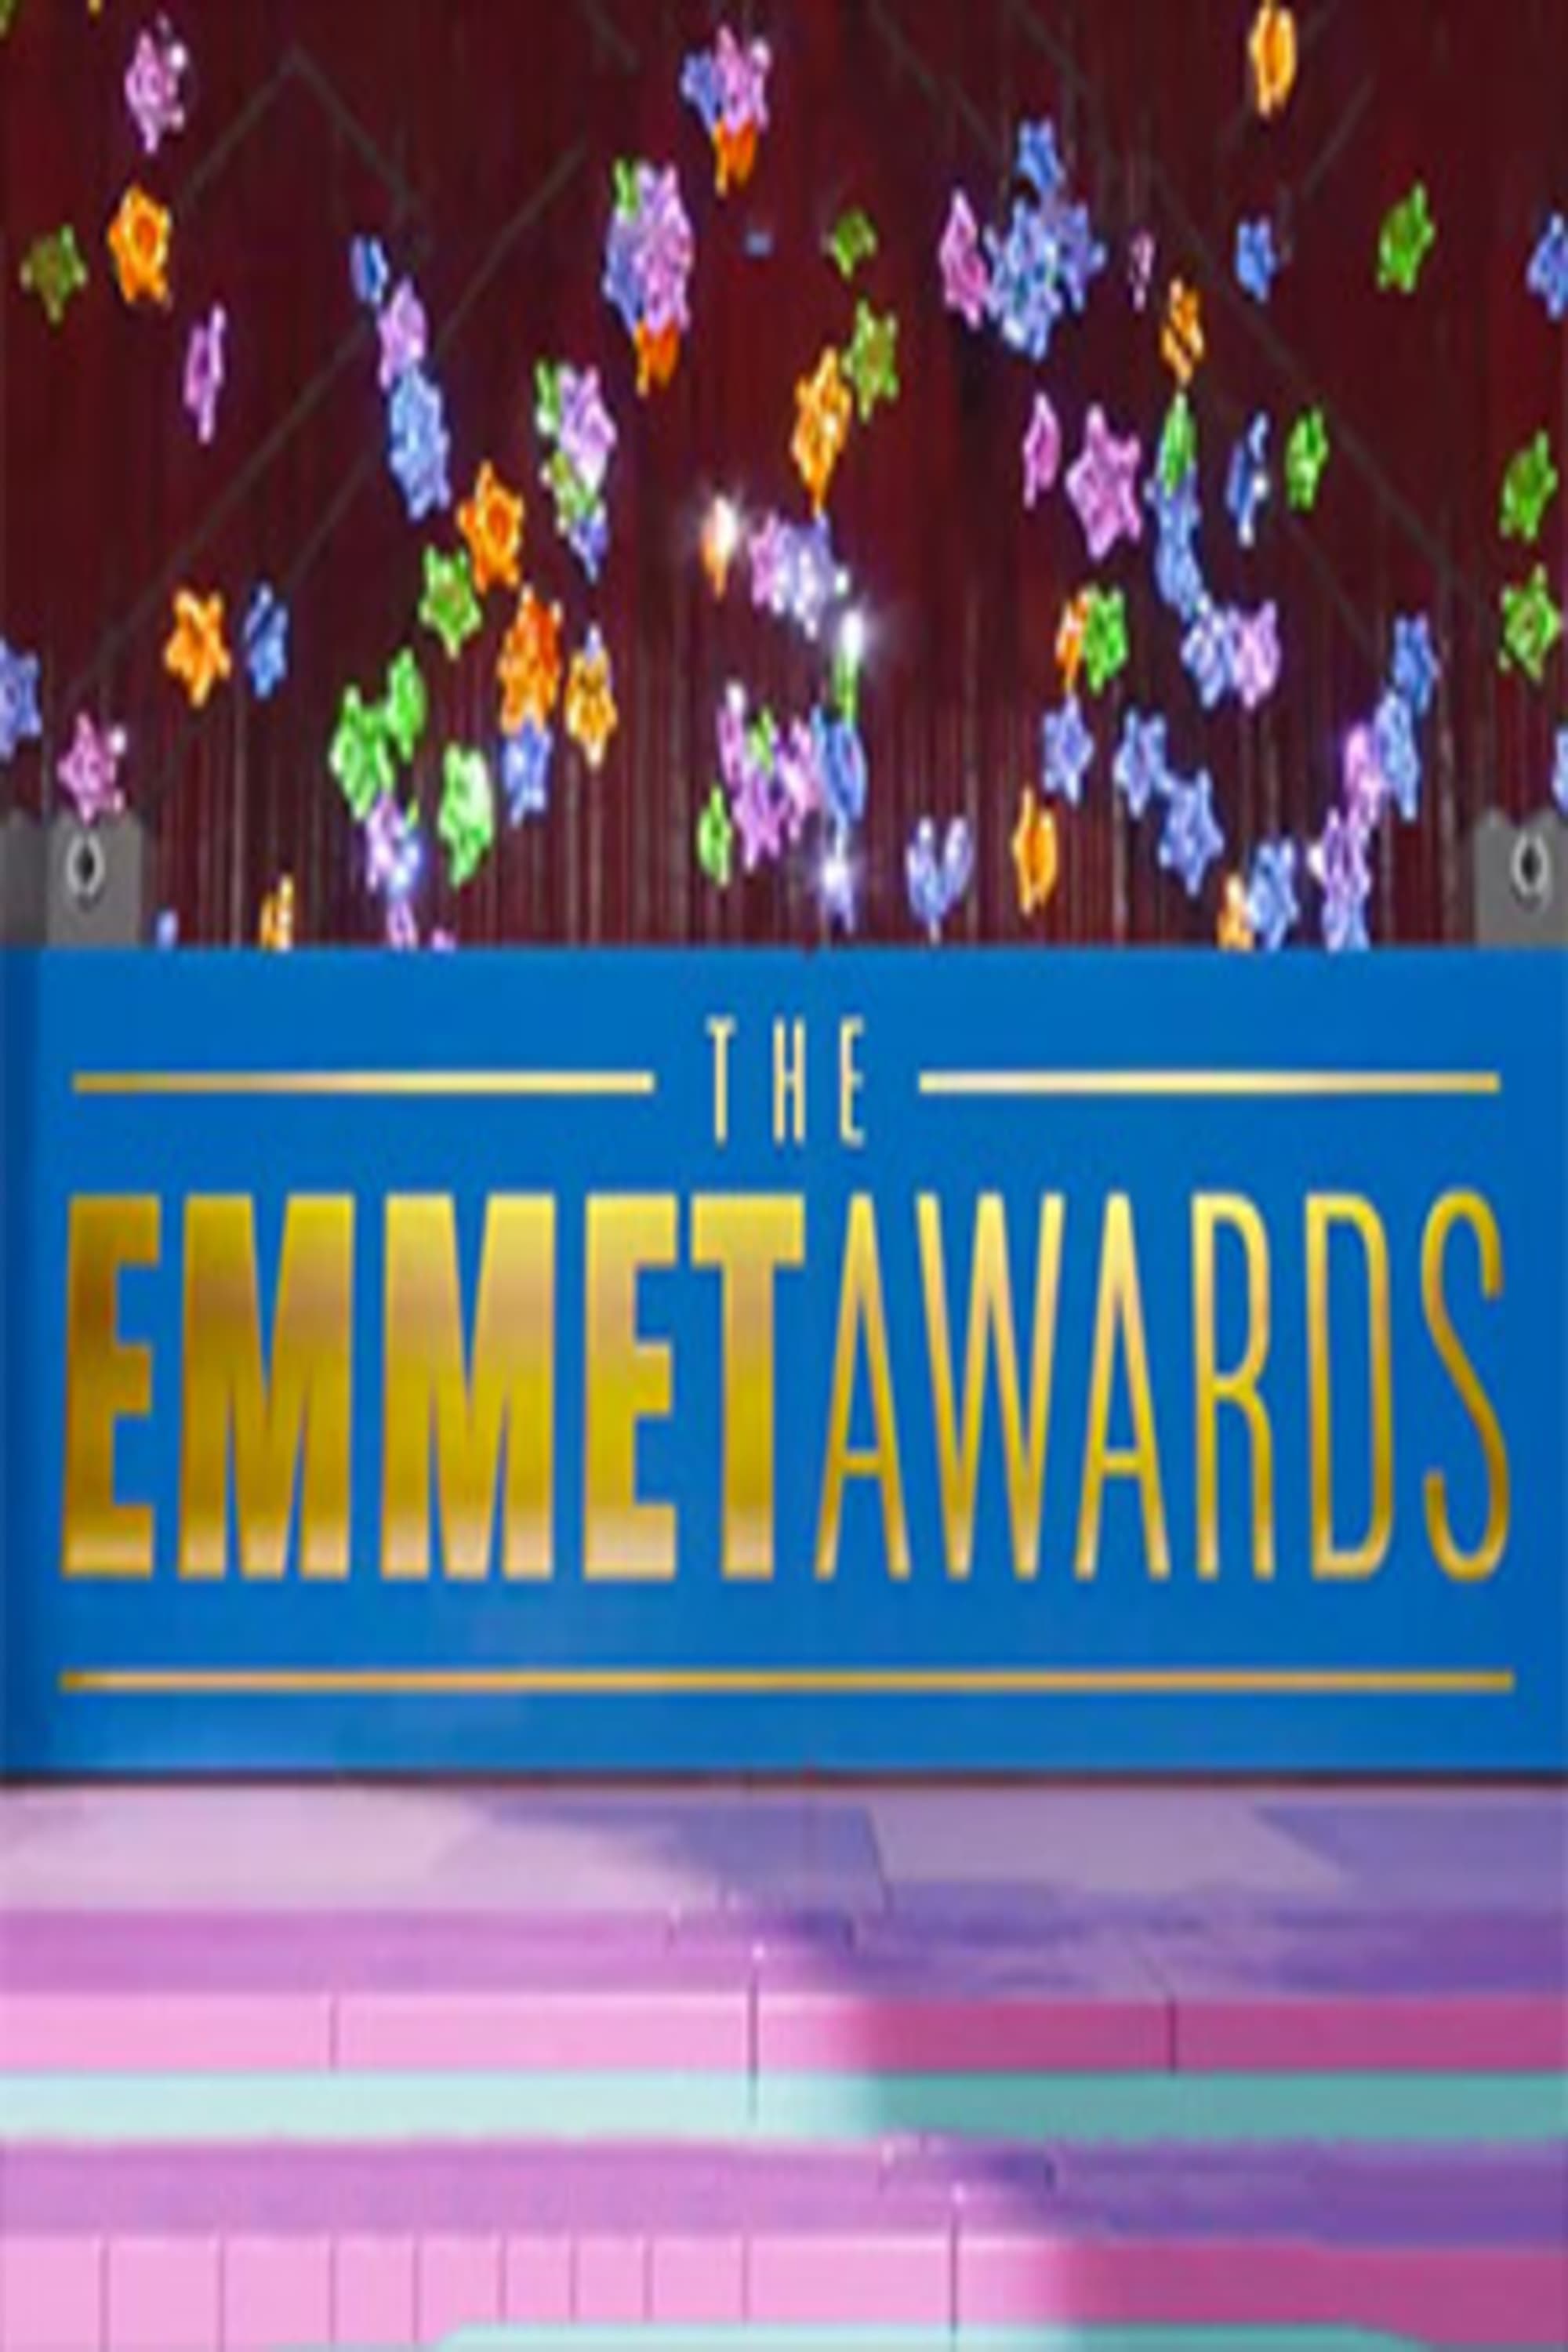 The Emmet Awards Show! (2014)